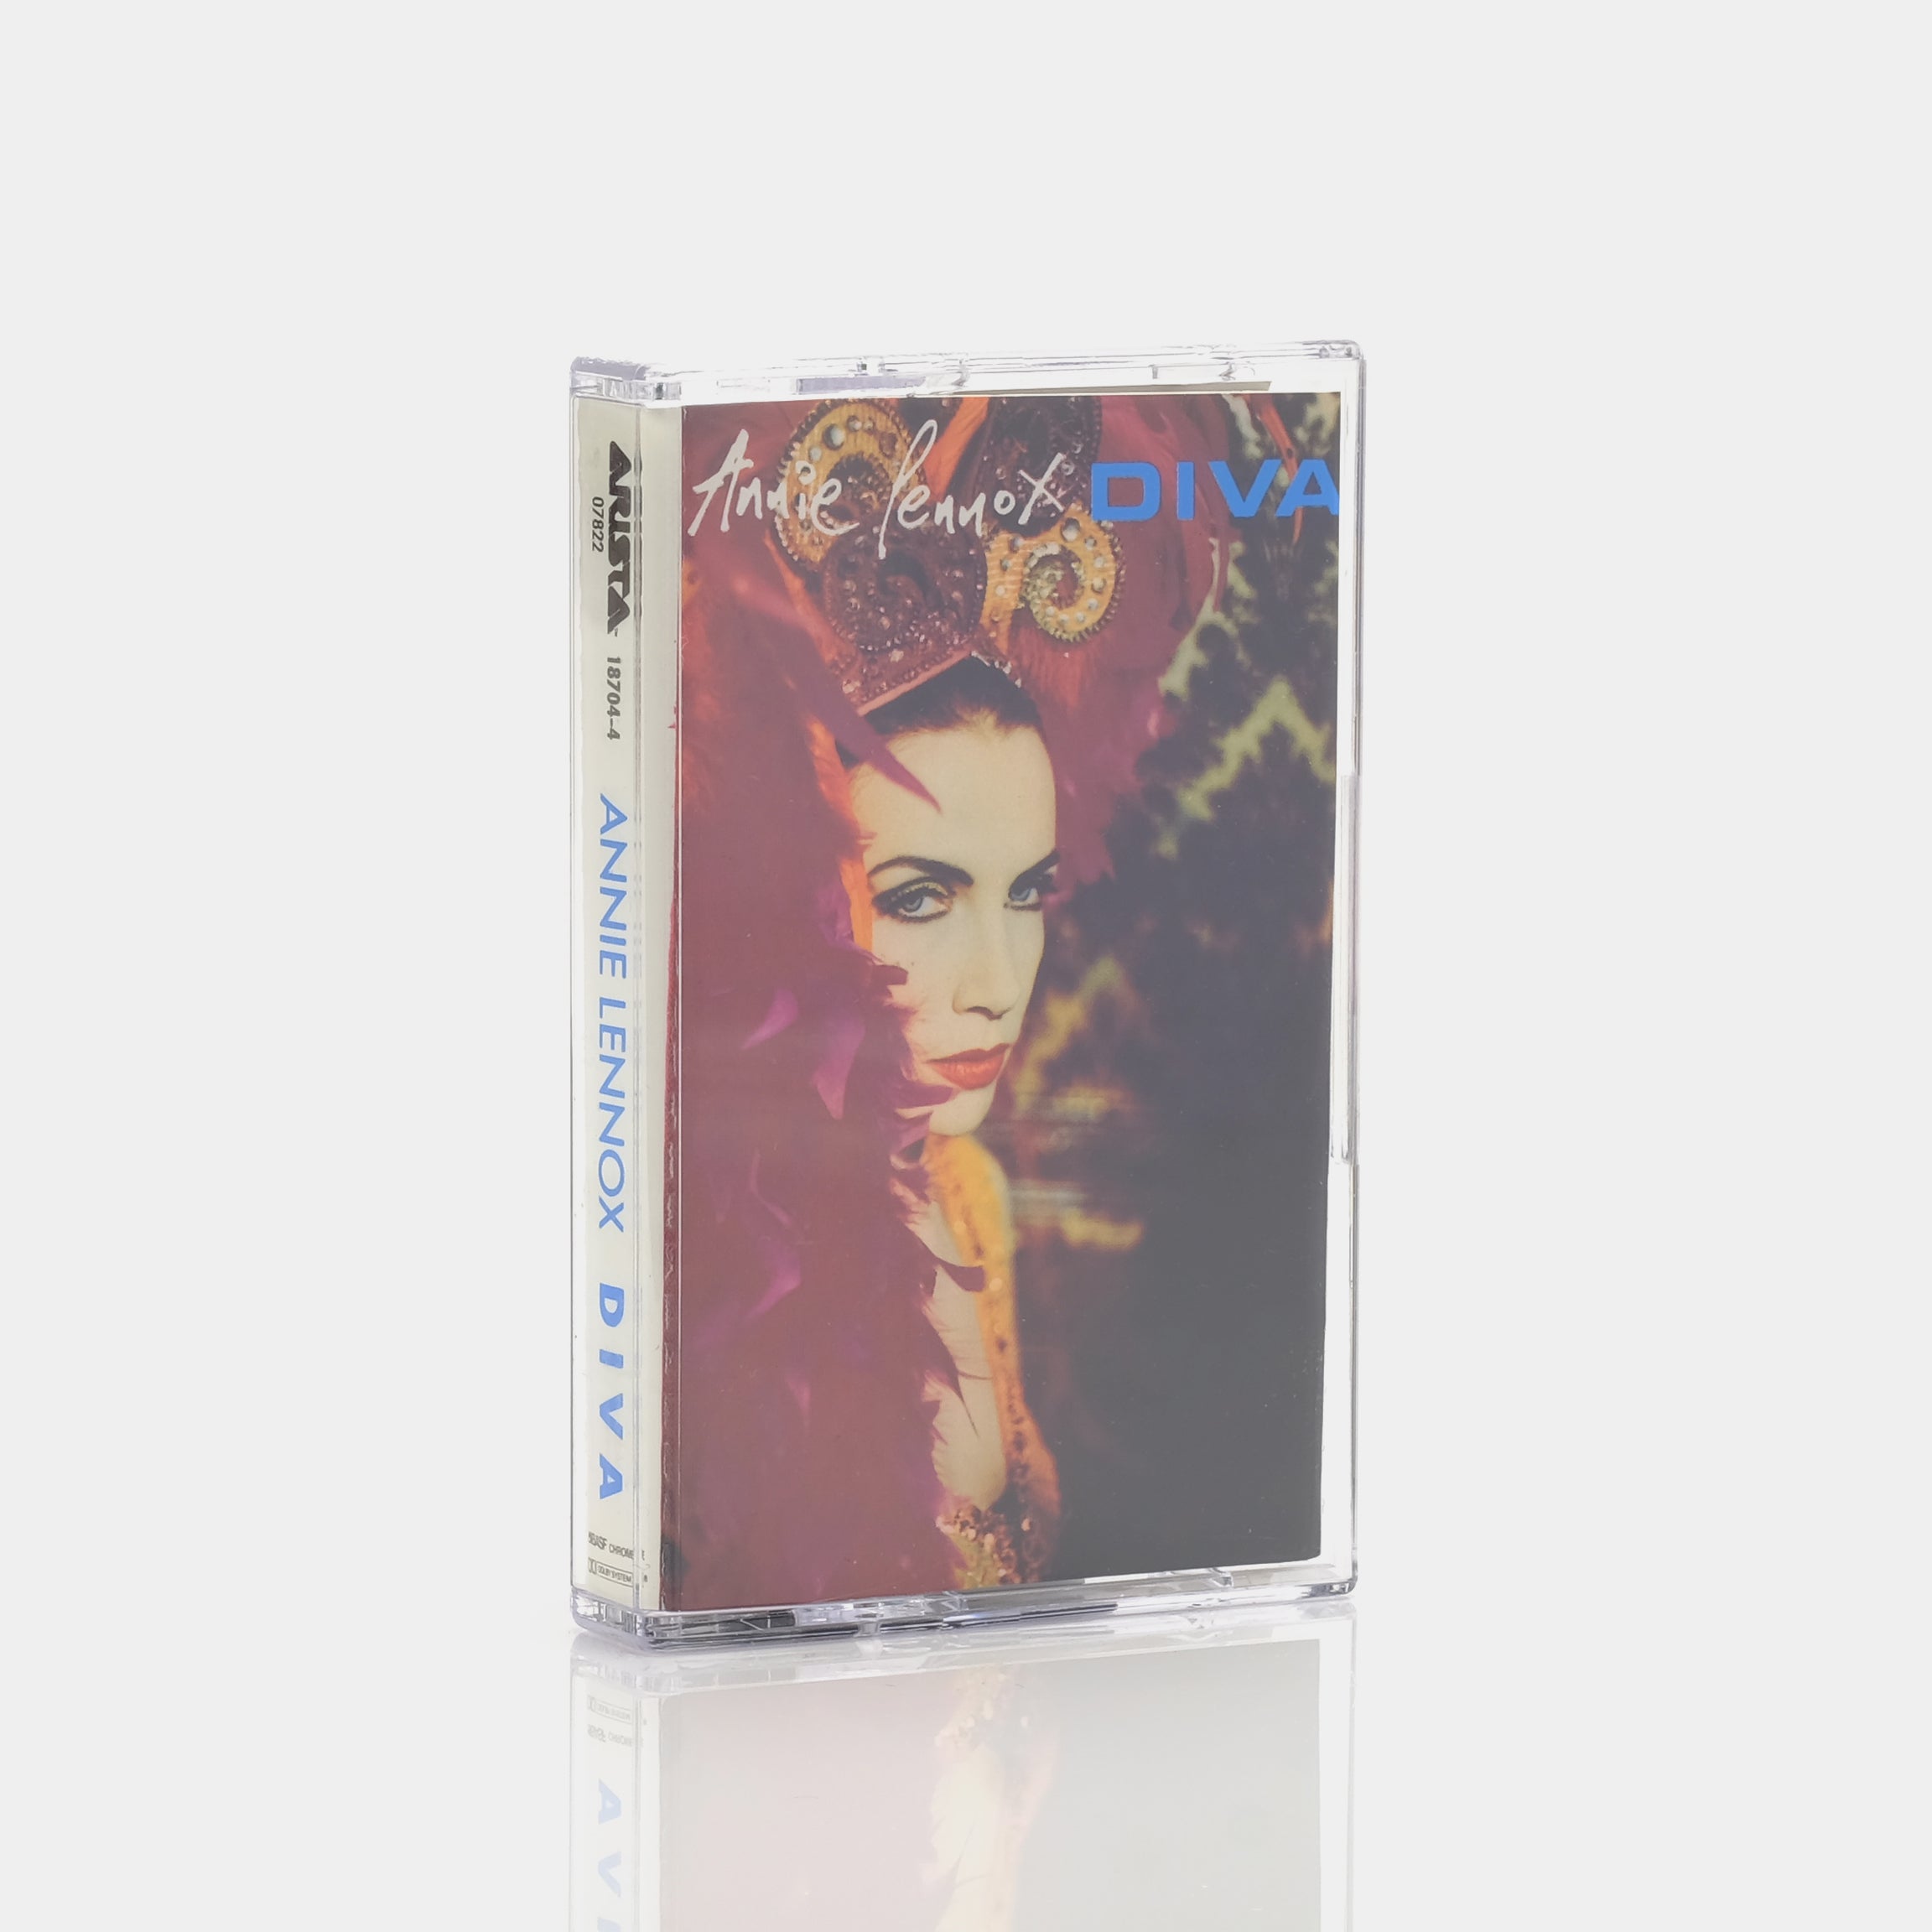 Annie Lennox - Diva Cassette Tape